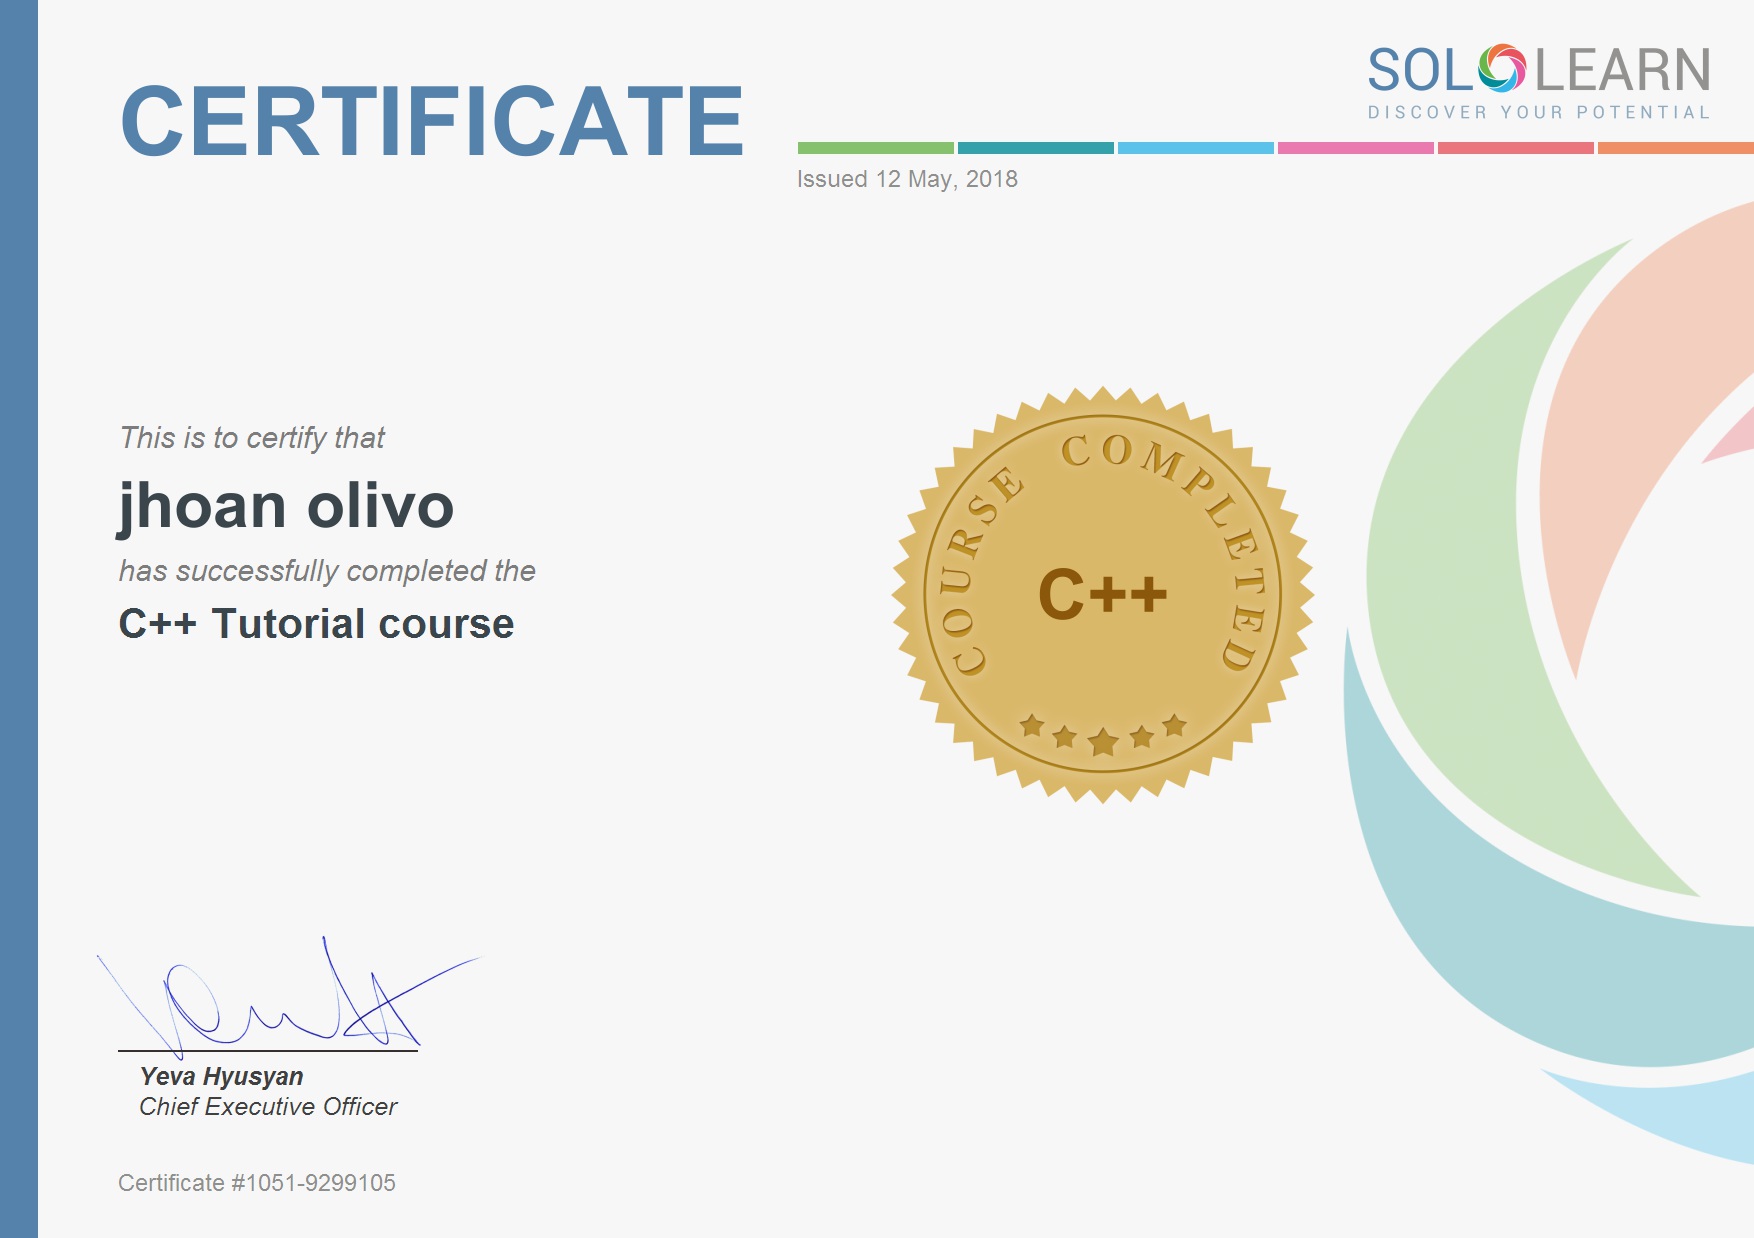 Certificado de la aplicacion Sololearn en el lenguaje c++